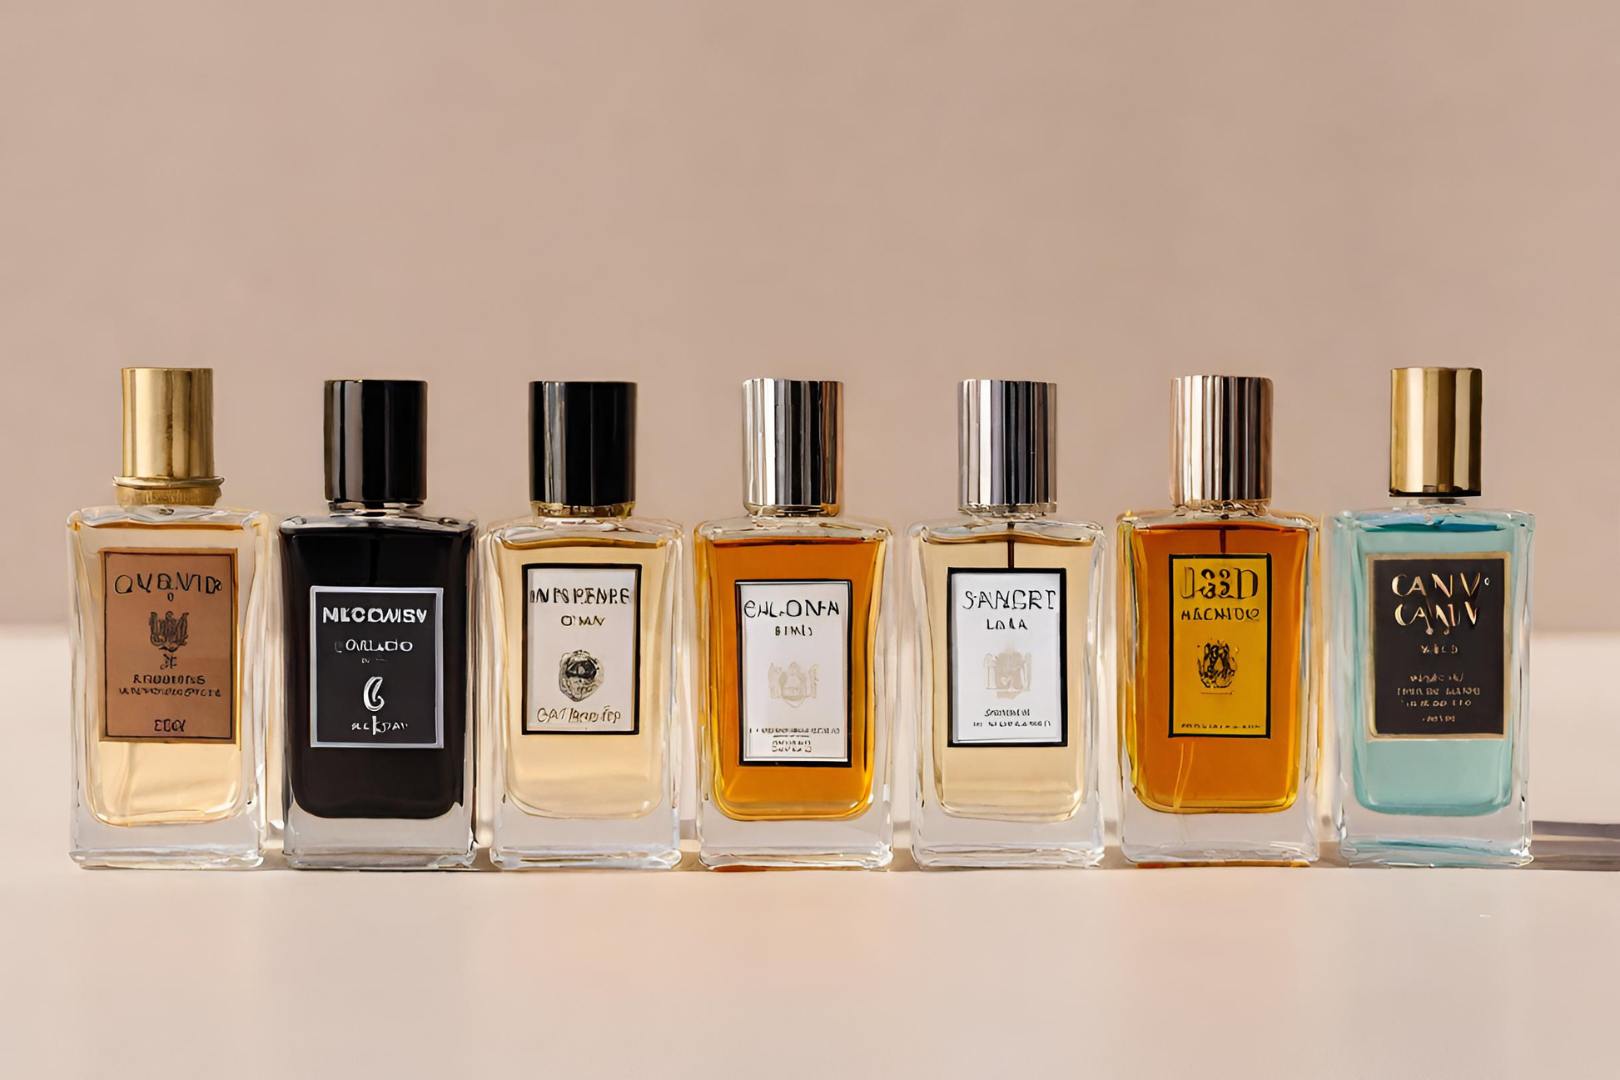 Melhores Perfumes Masculinos Franceses: 10 Ótimas Opções